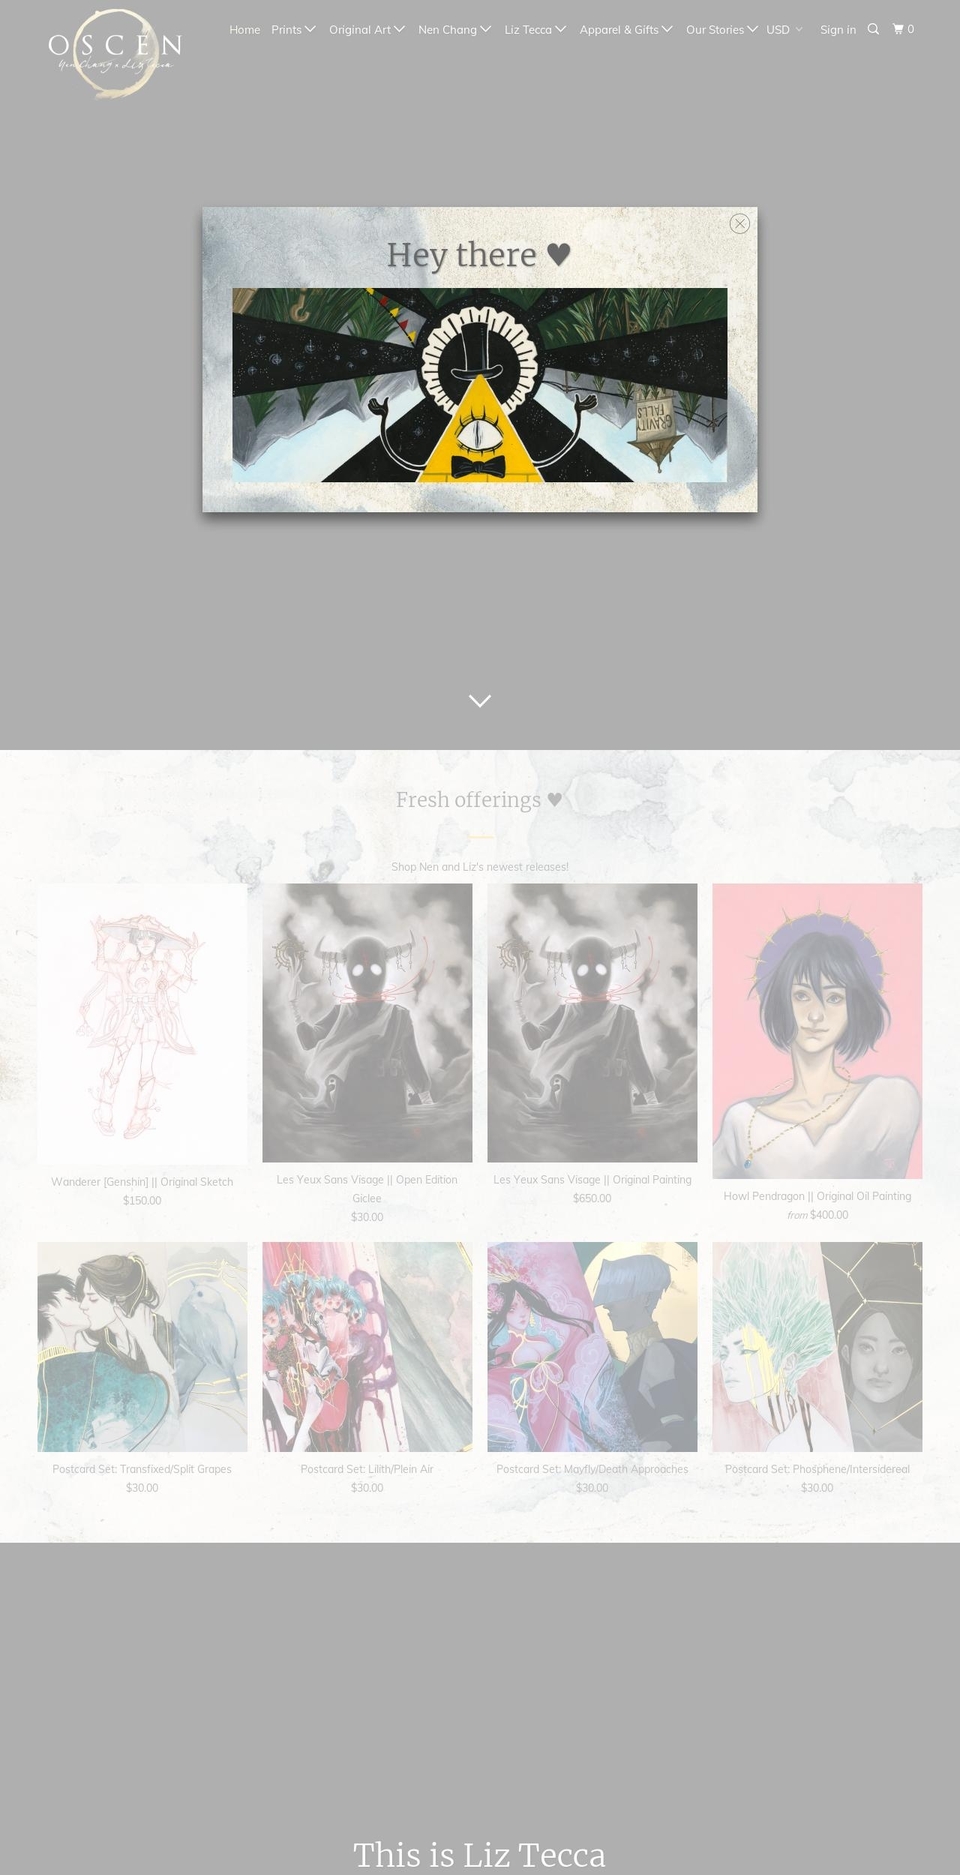 oscen.art shopify website screenshot